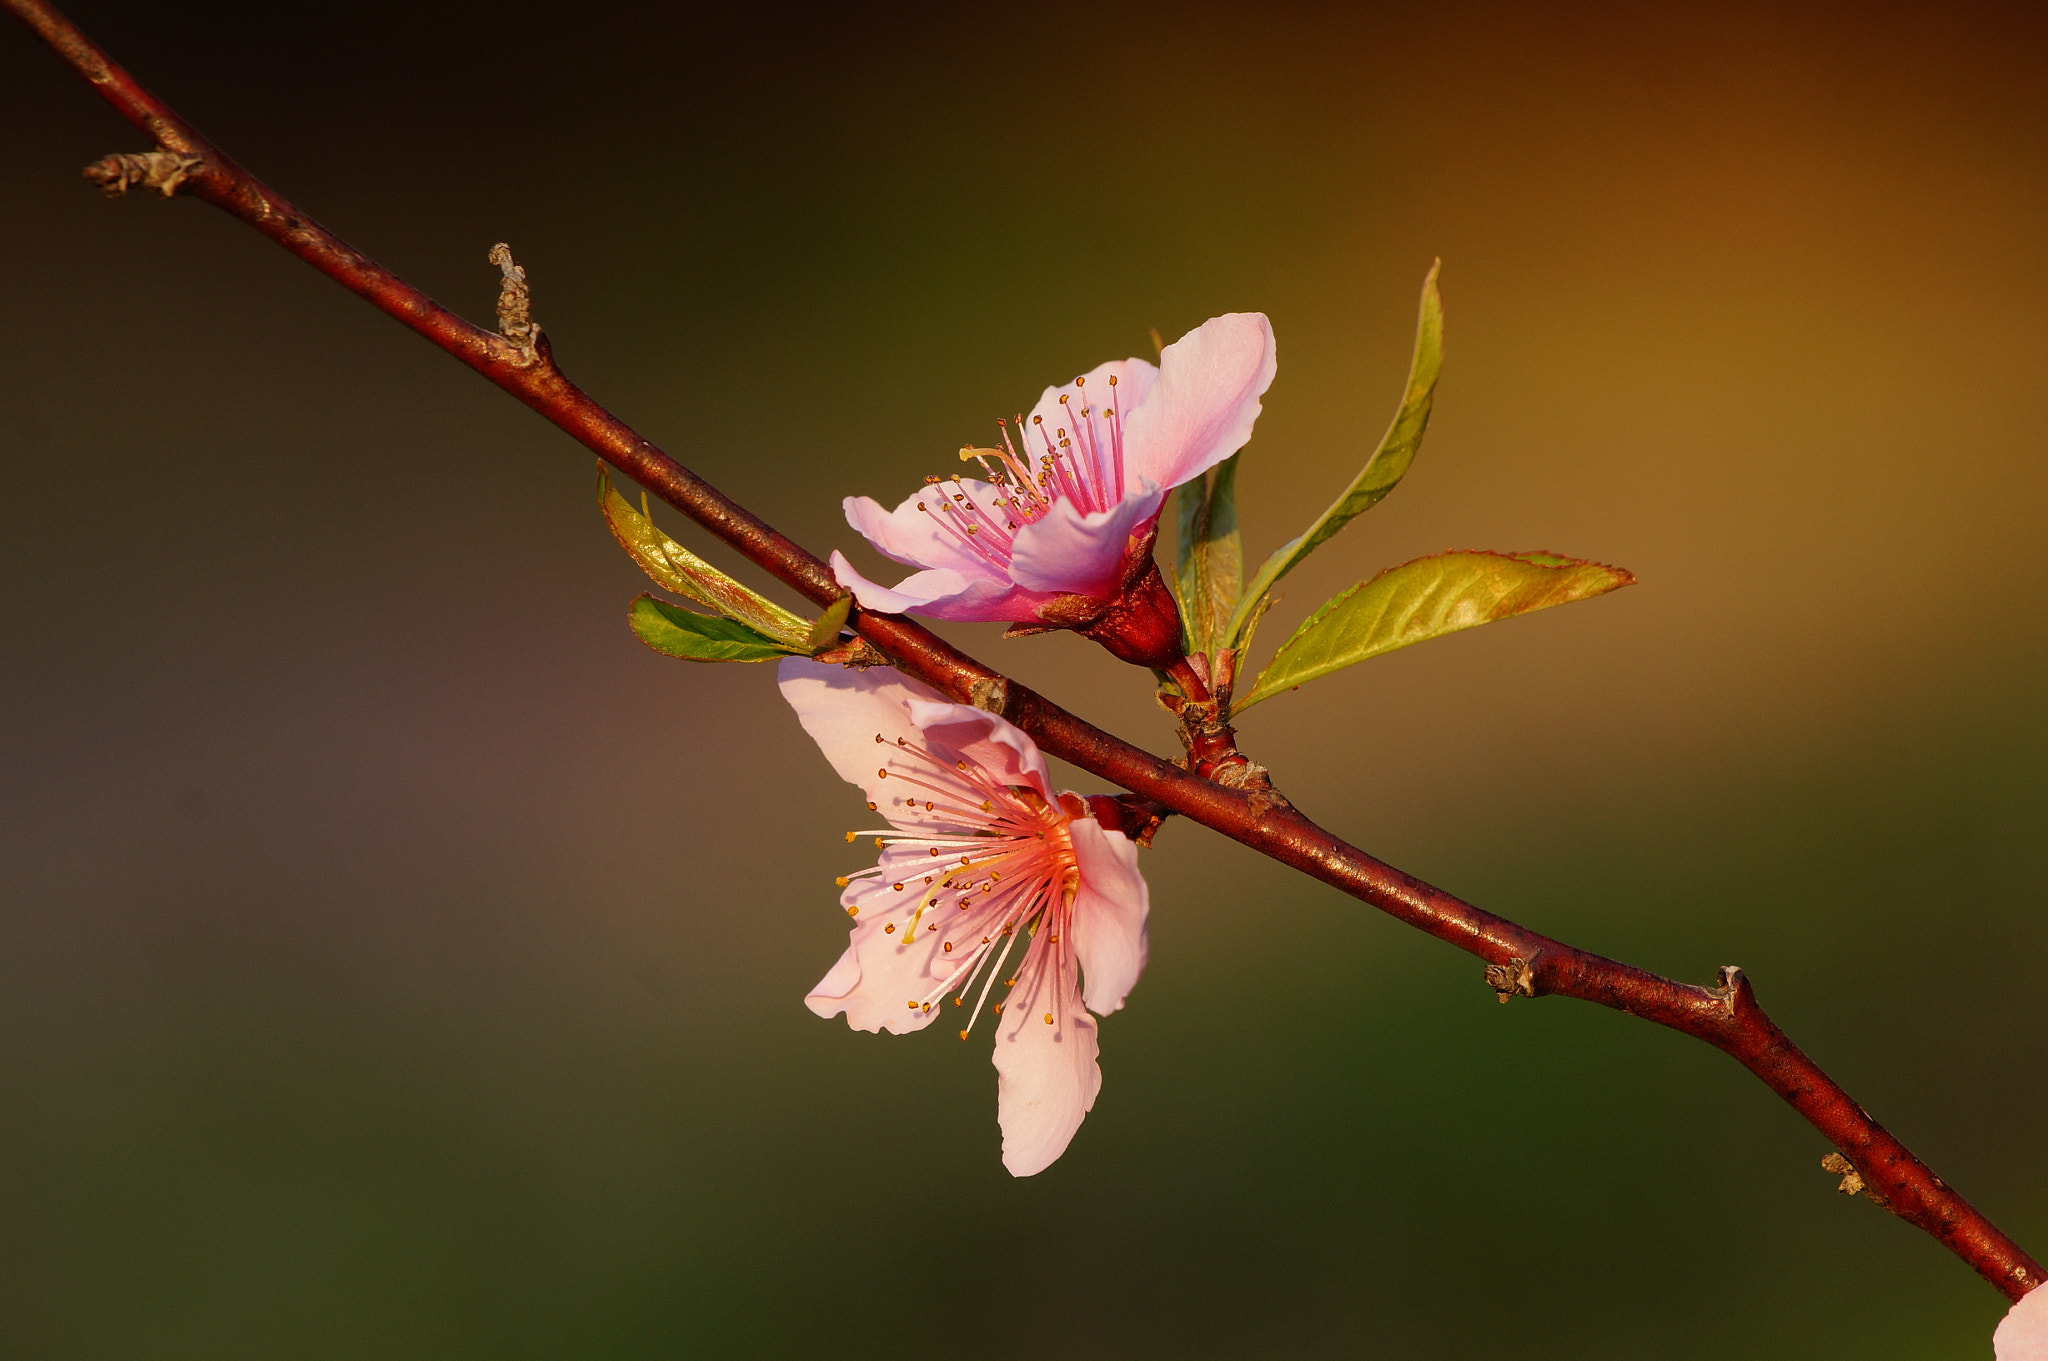 Sony SLT-A57 sample photo. Peach flower photography